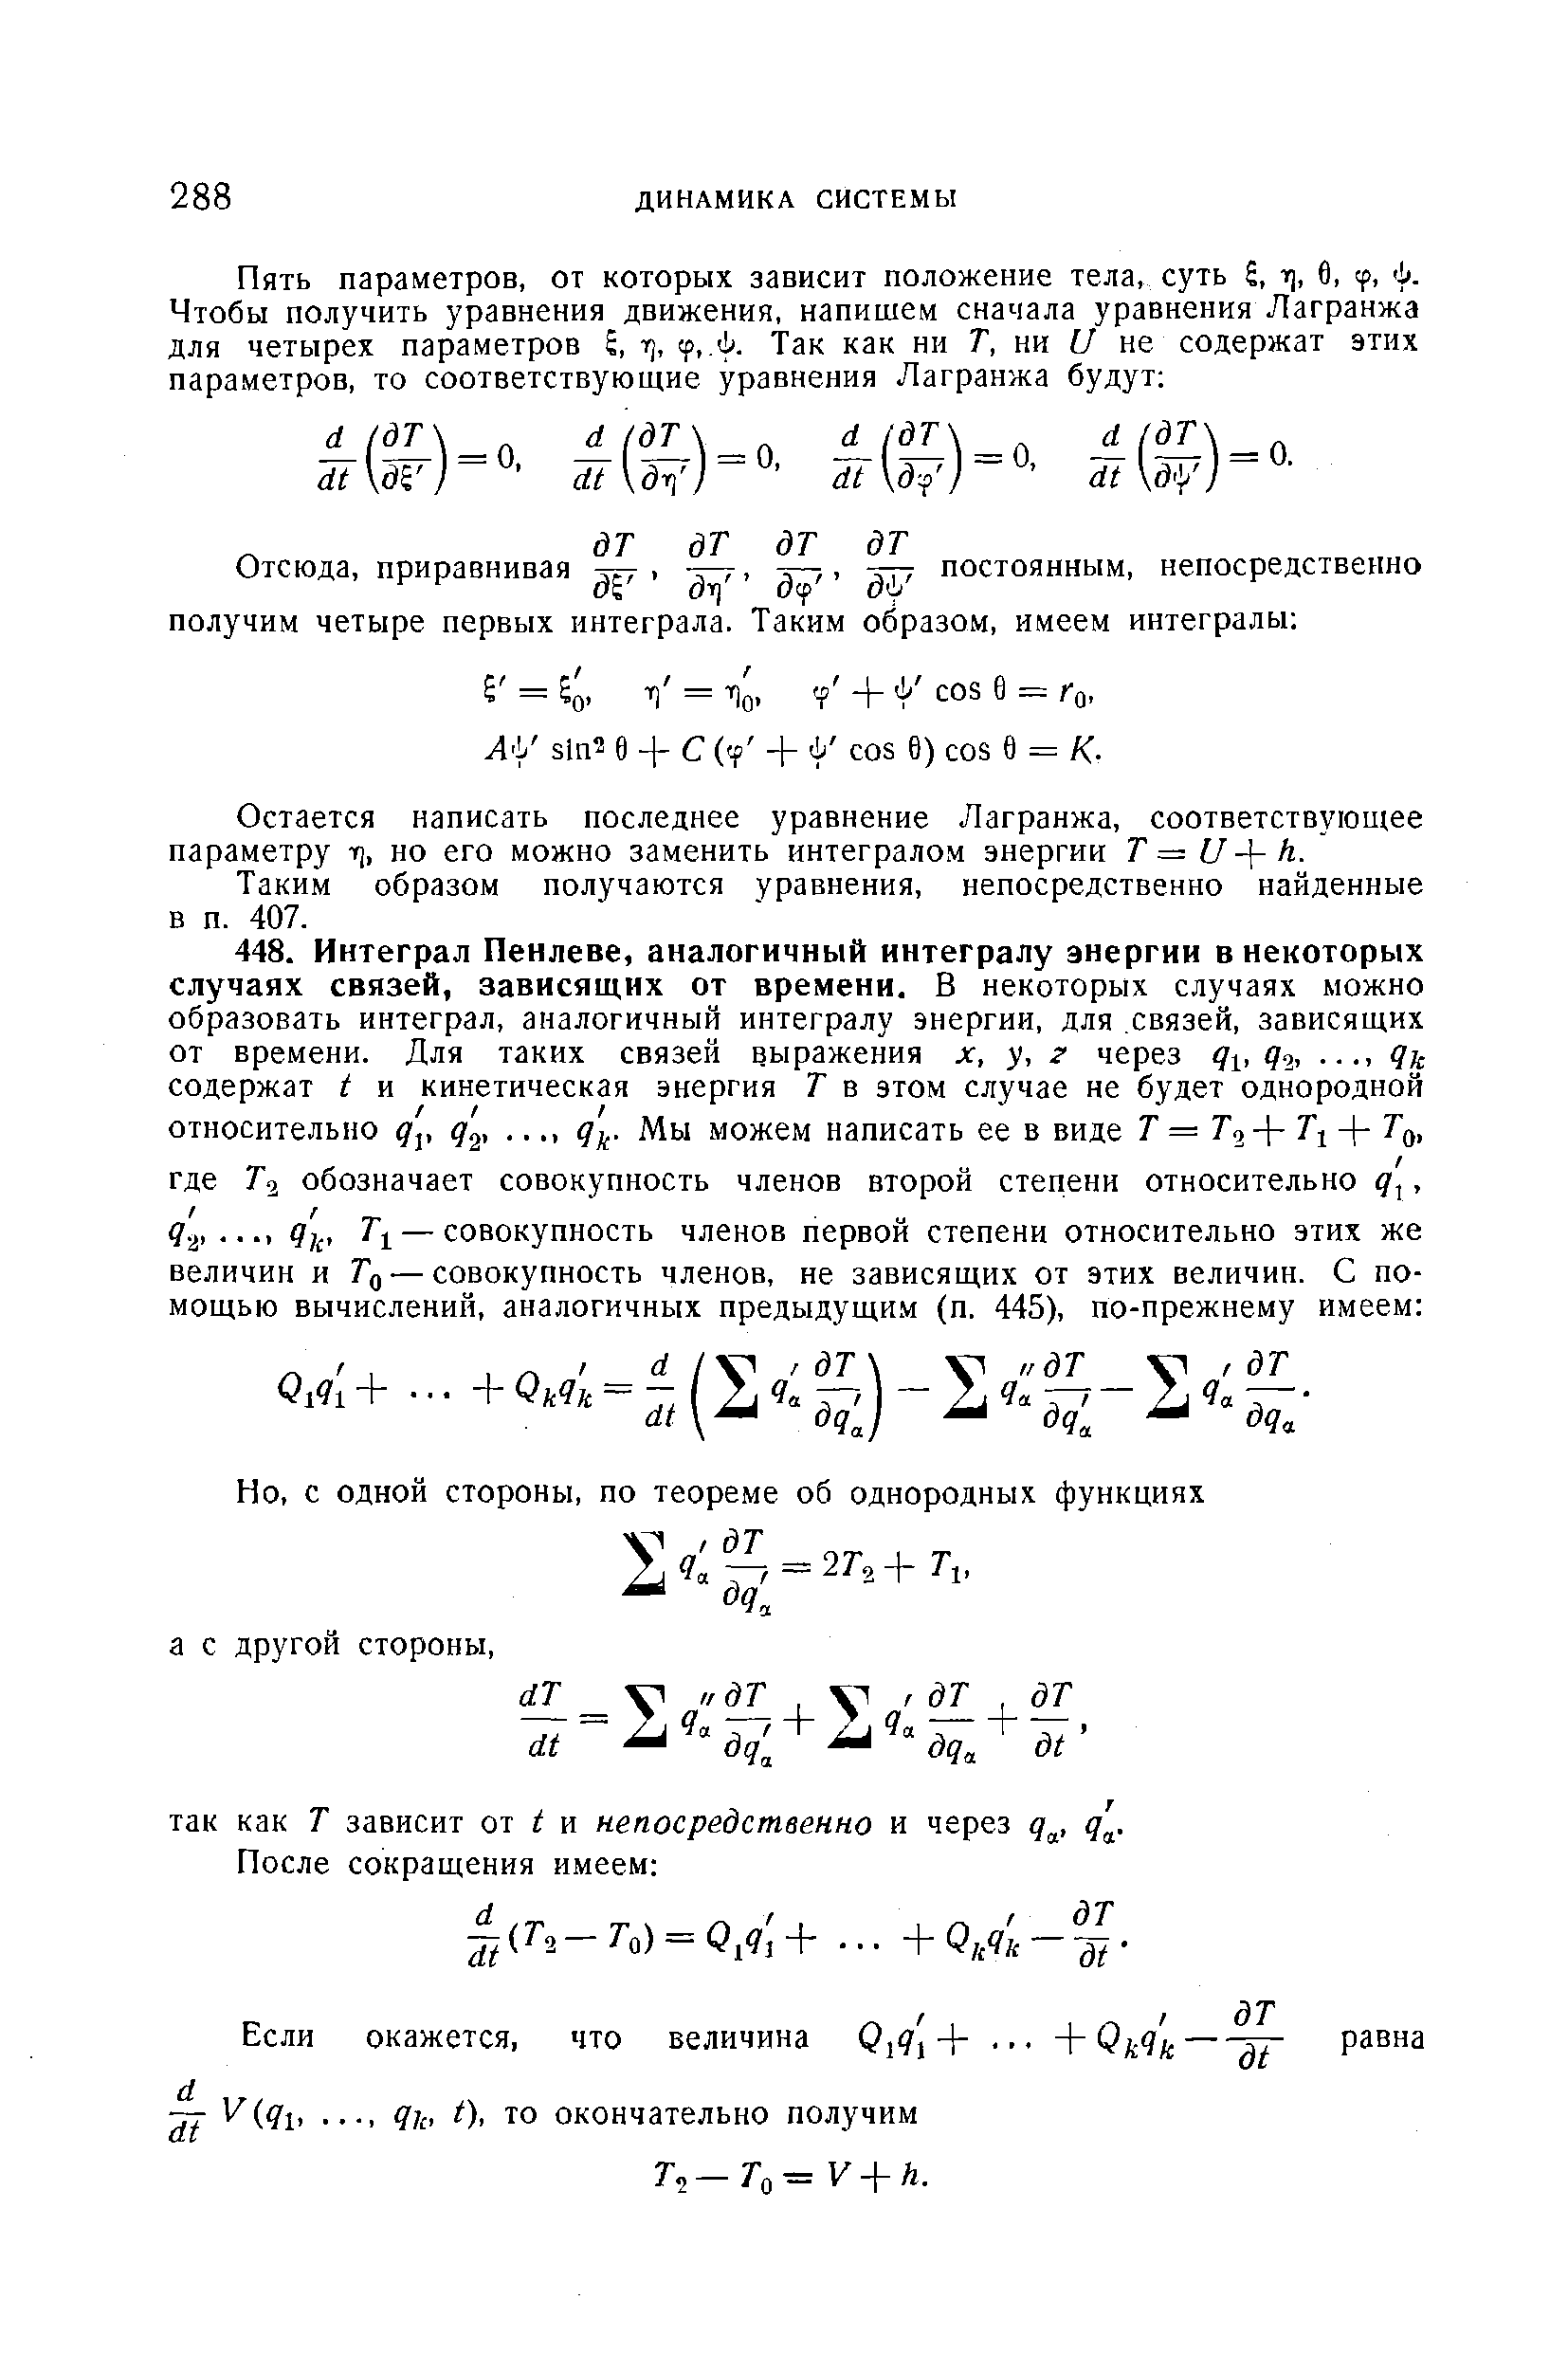 Остается написать последнее уравнение Лагранжа, соответствующее параметру rj, но его можно заменить интегралом энергии Г = 7 - - Л.
